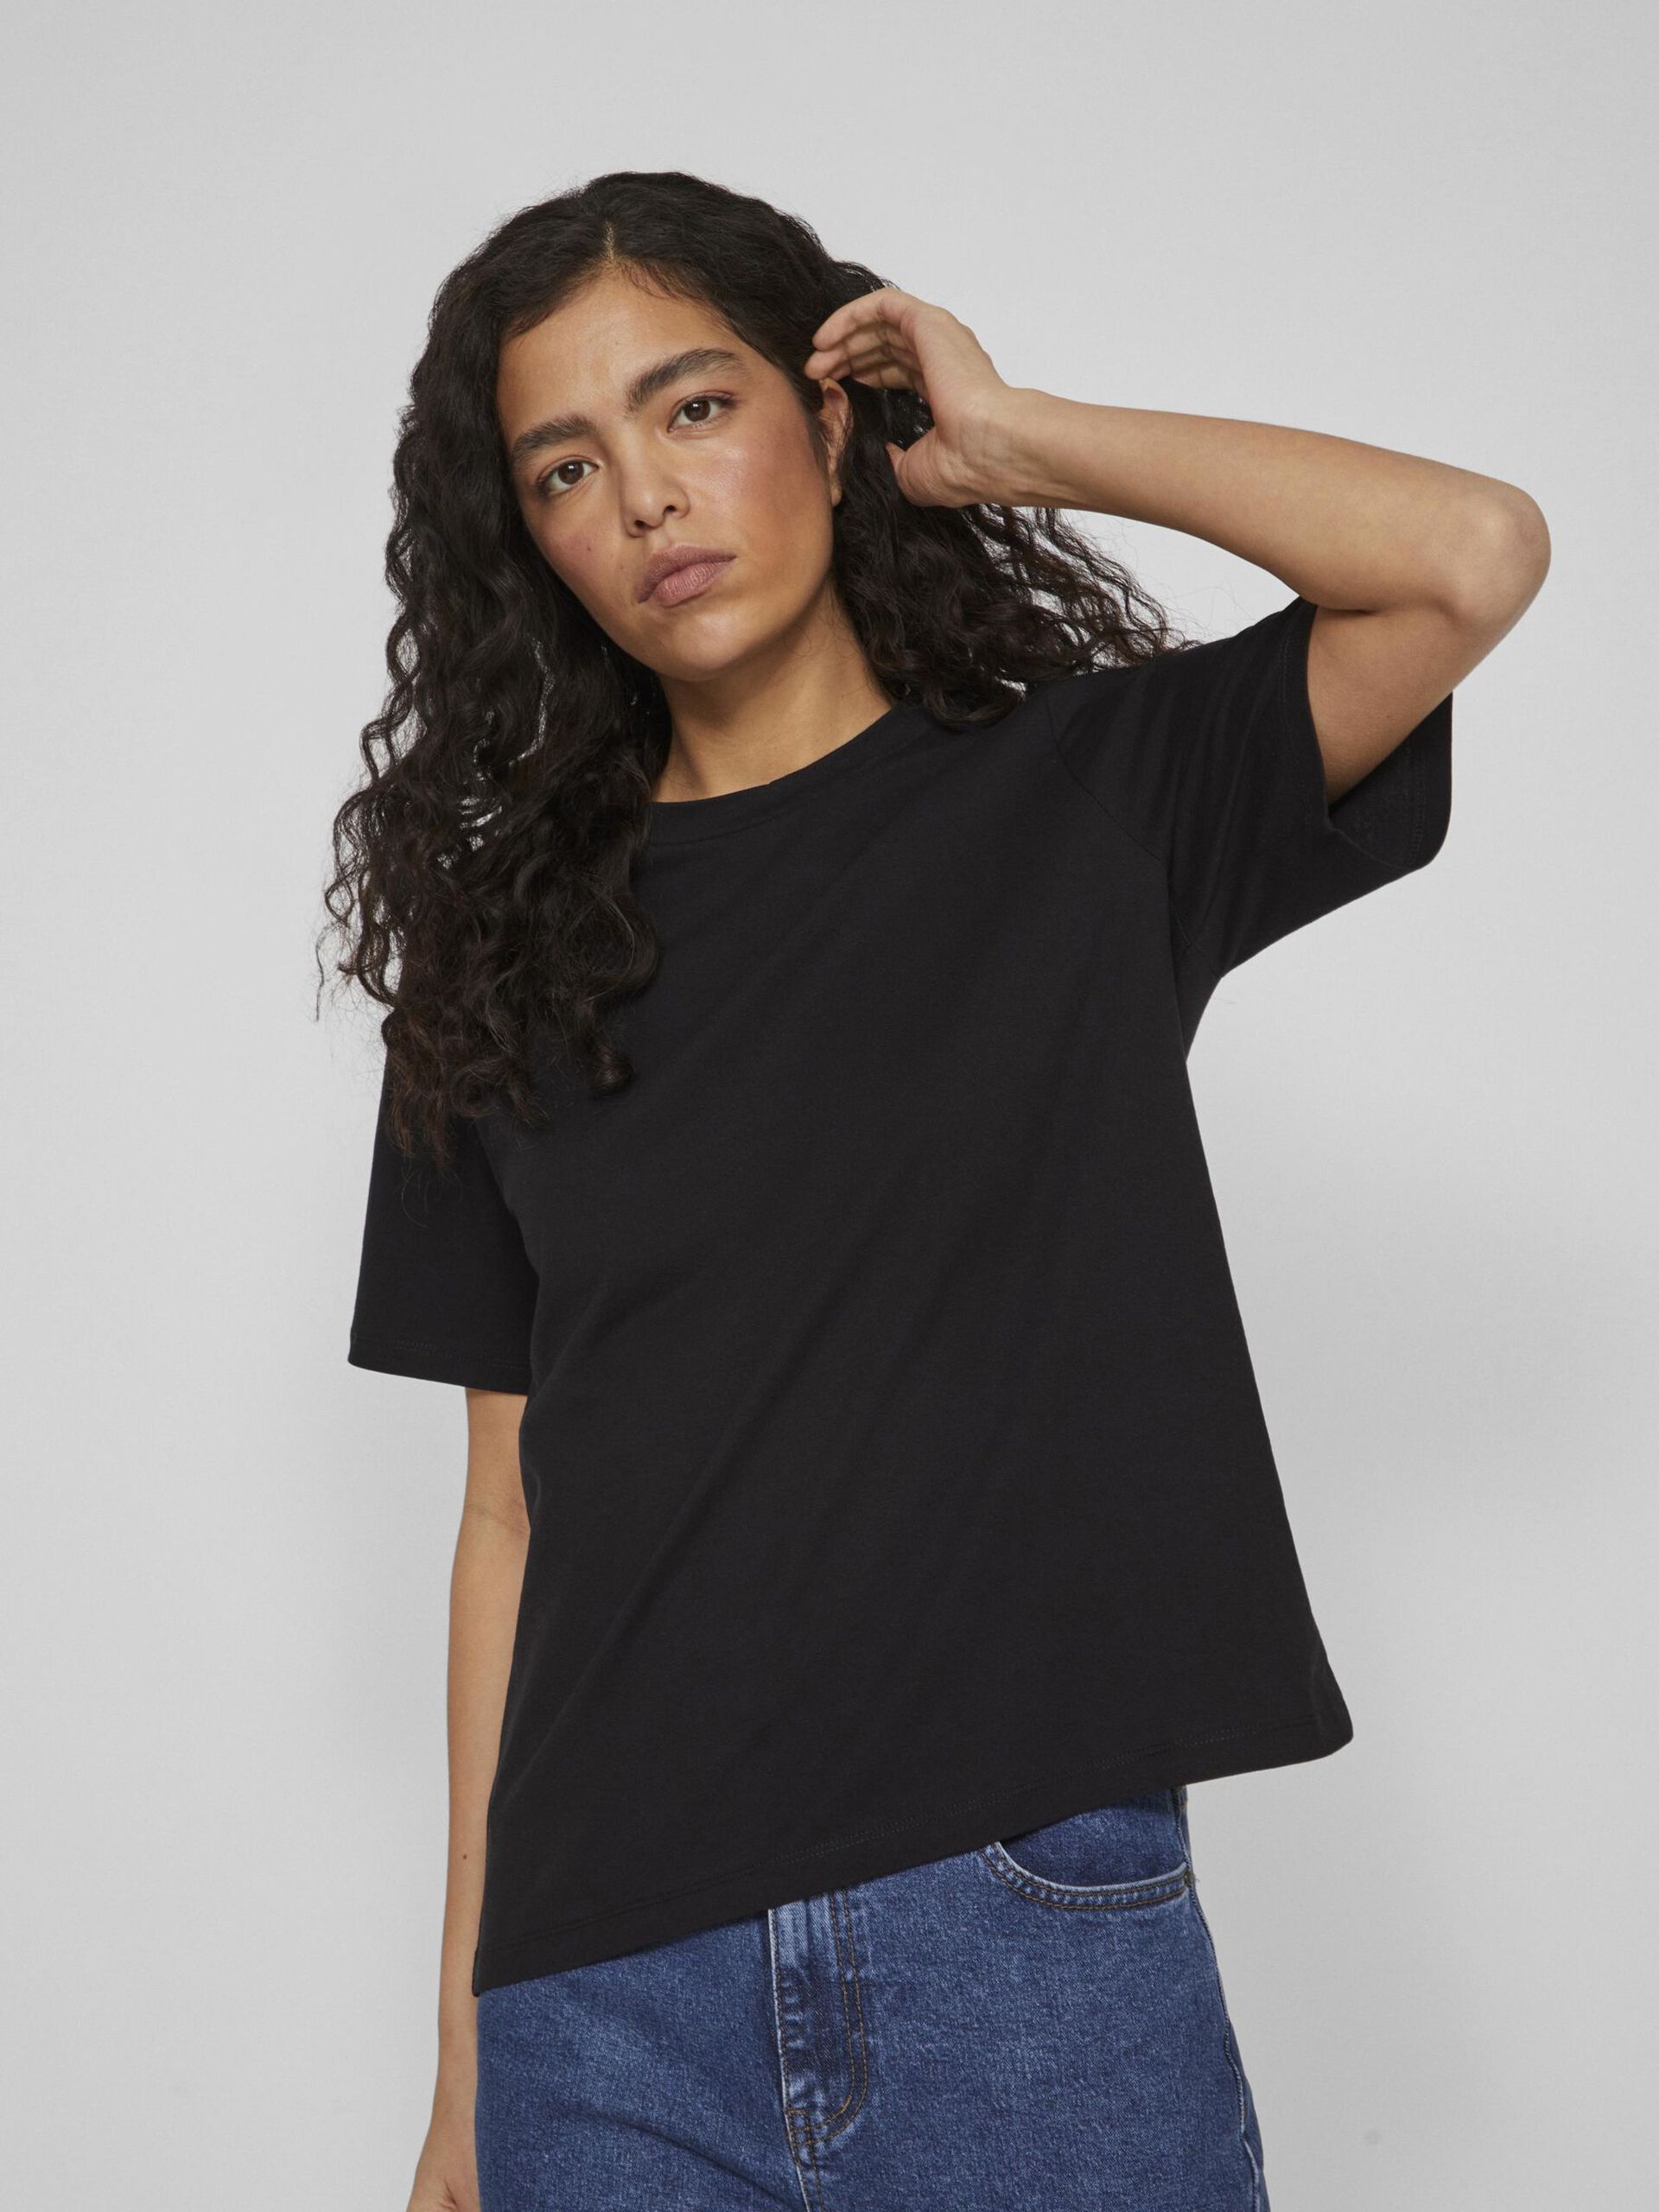 Camiseta básica de algodón modelo Darlene en color negro con cuello redondo y manga corta. Corte cuadrado. Modelo 14089280 de Vila.